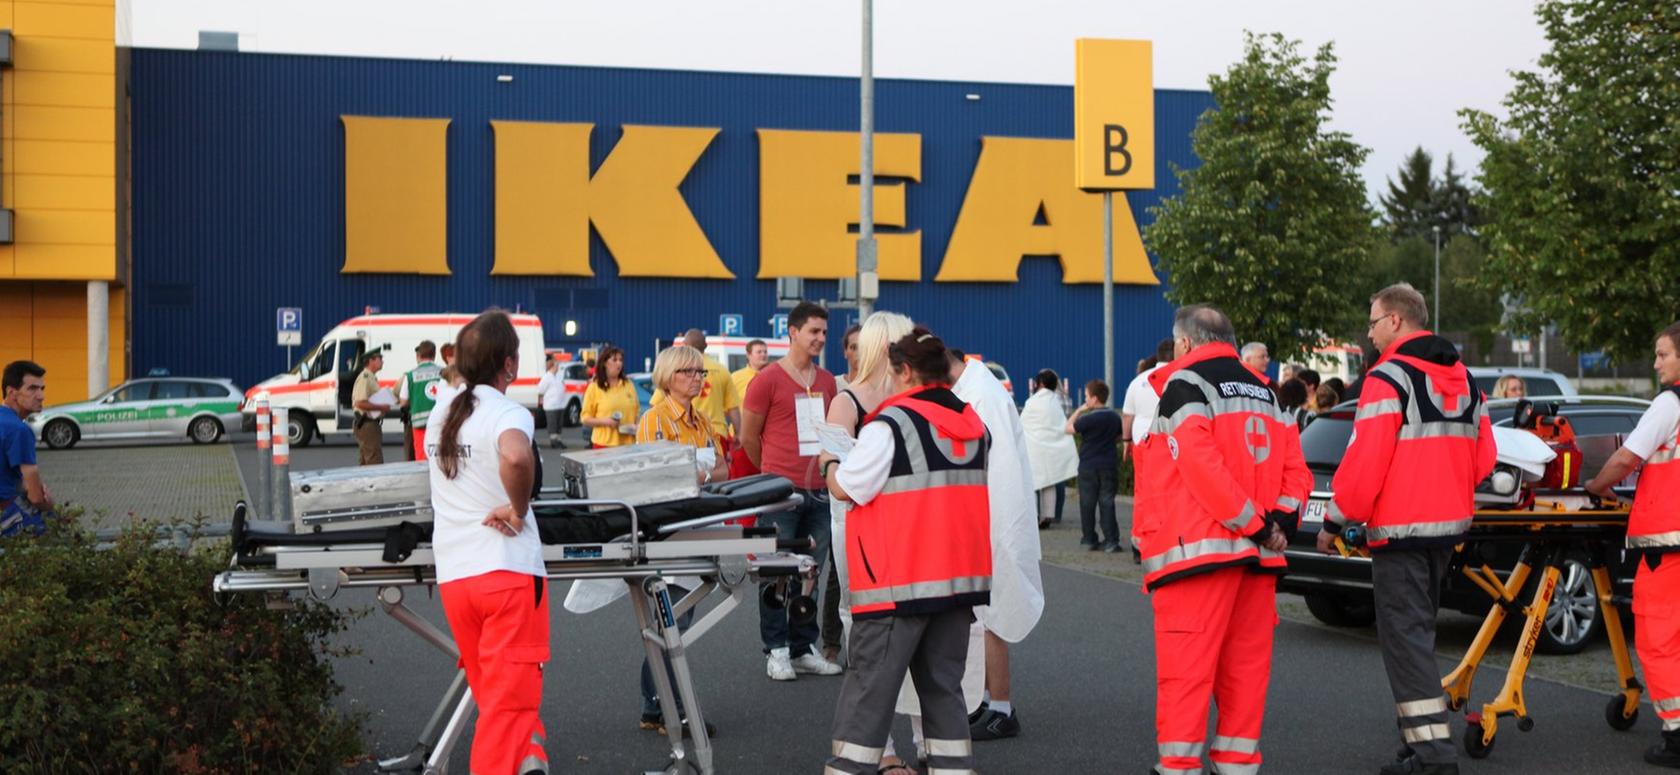 Großalarm bei Ikea: Herkunft des Geruchs bleibt mysteriös